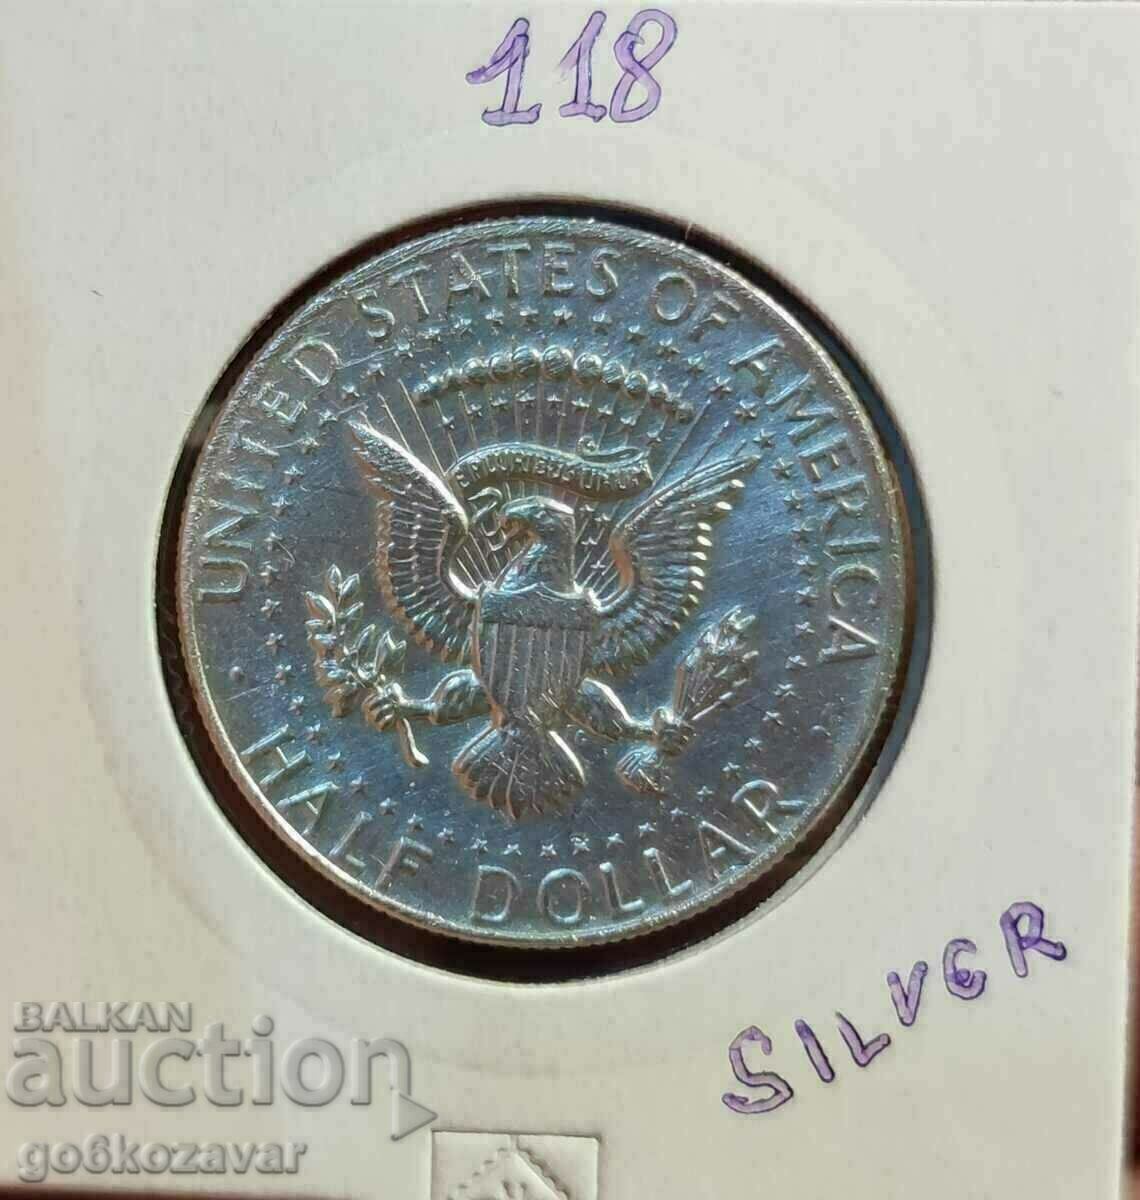 USA Half 1/2 Dollar 1968 Silver !